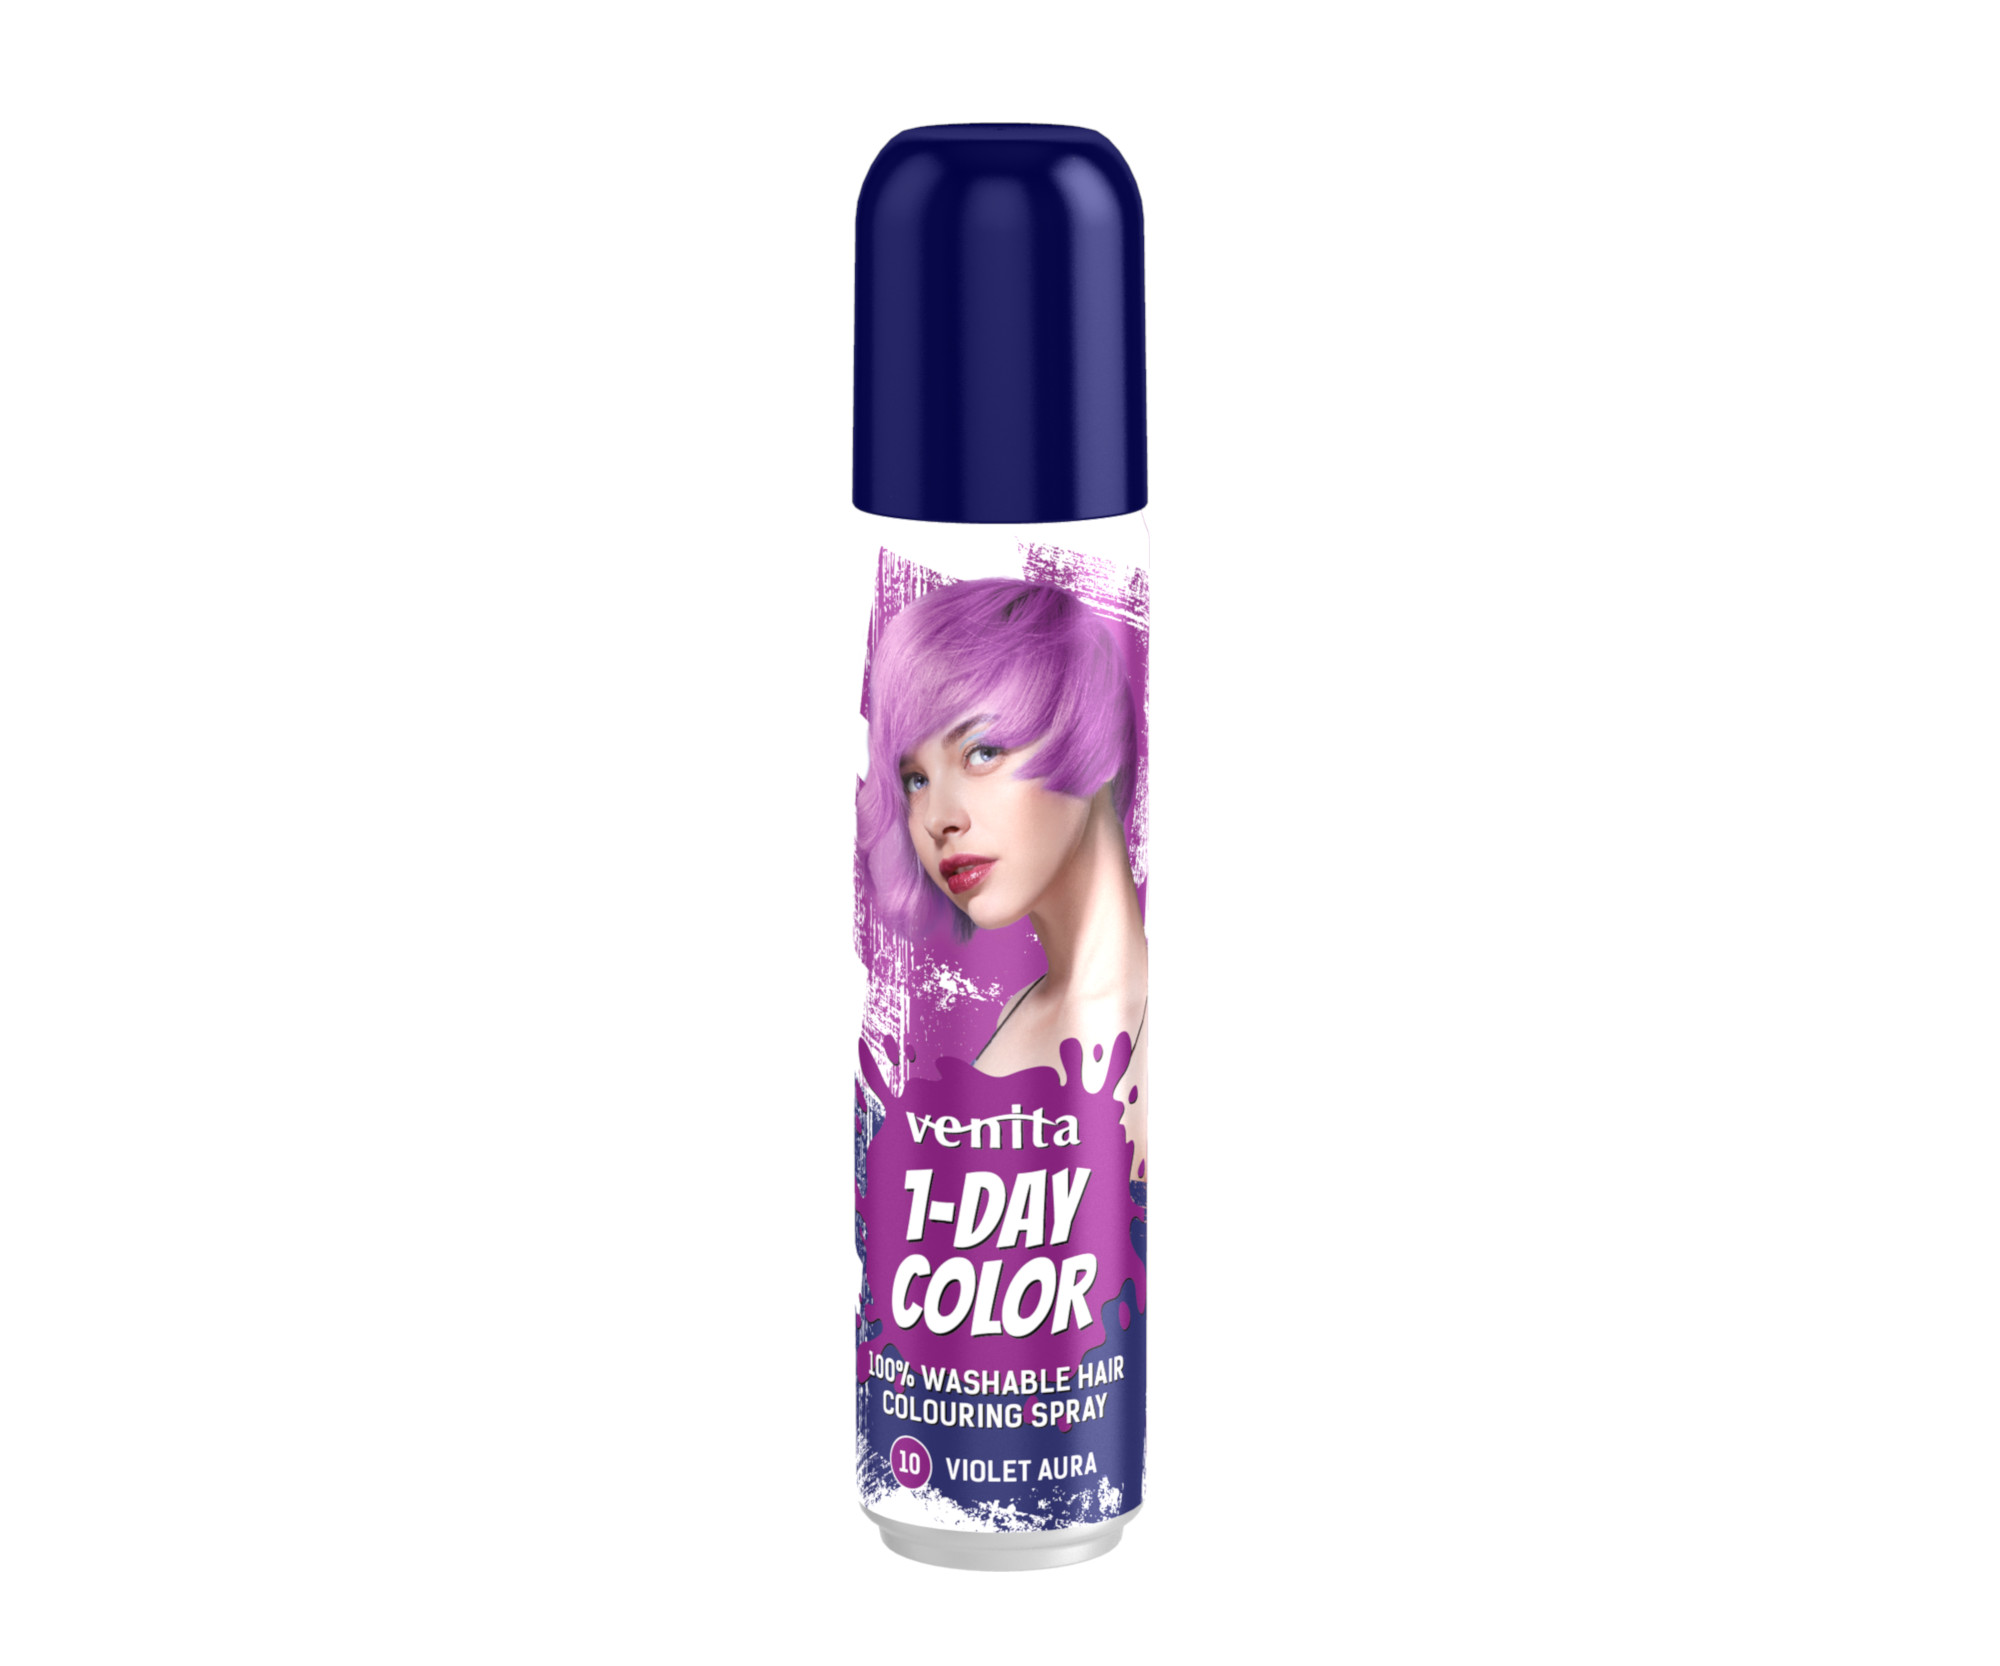 Barevný sprej na vlasy Venita 1-Day Color Violet Aura - 50 ml, fialová (CVA10)